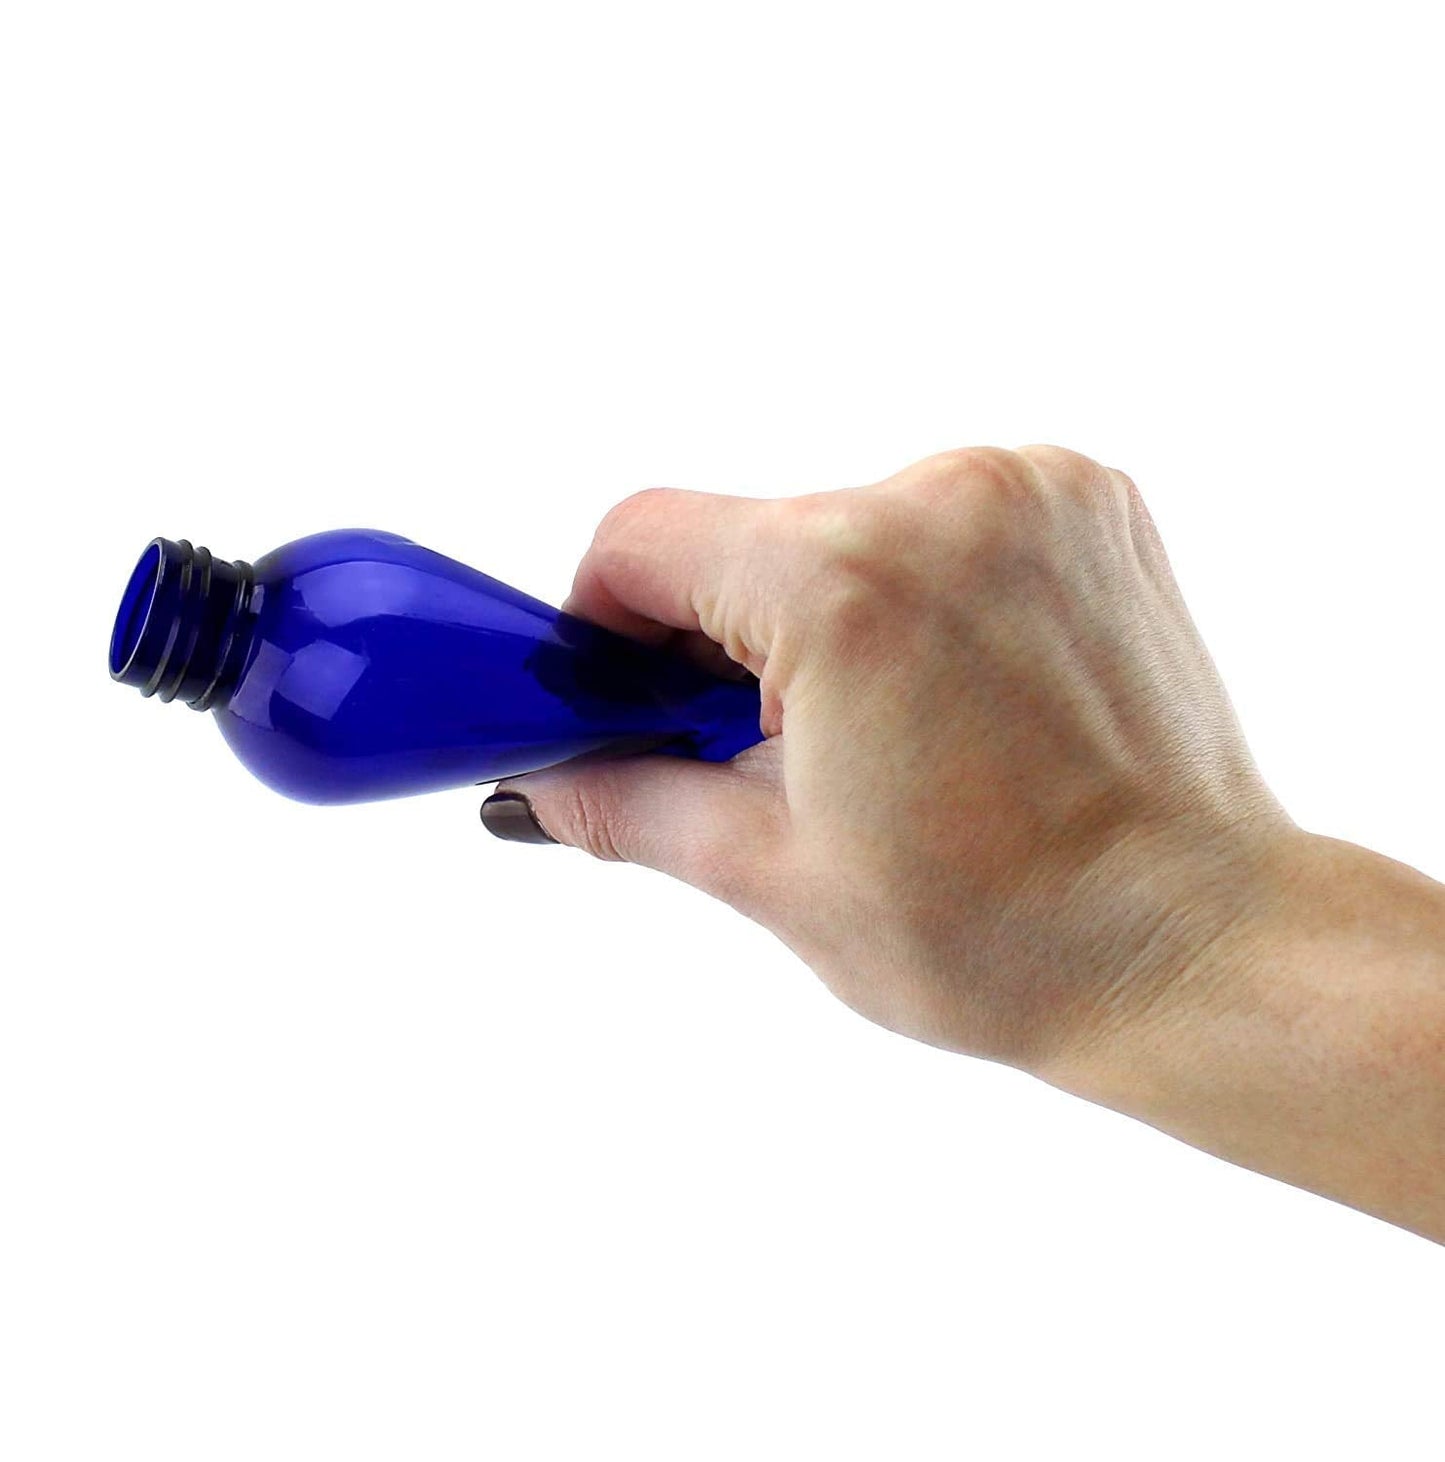 8oz Empty Plastic Squeeze Bottles w/Disc Top Flip Cap (6 pack, Blue) - sh1260cb08ozBL